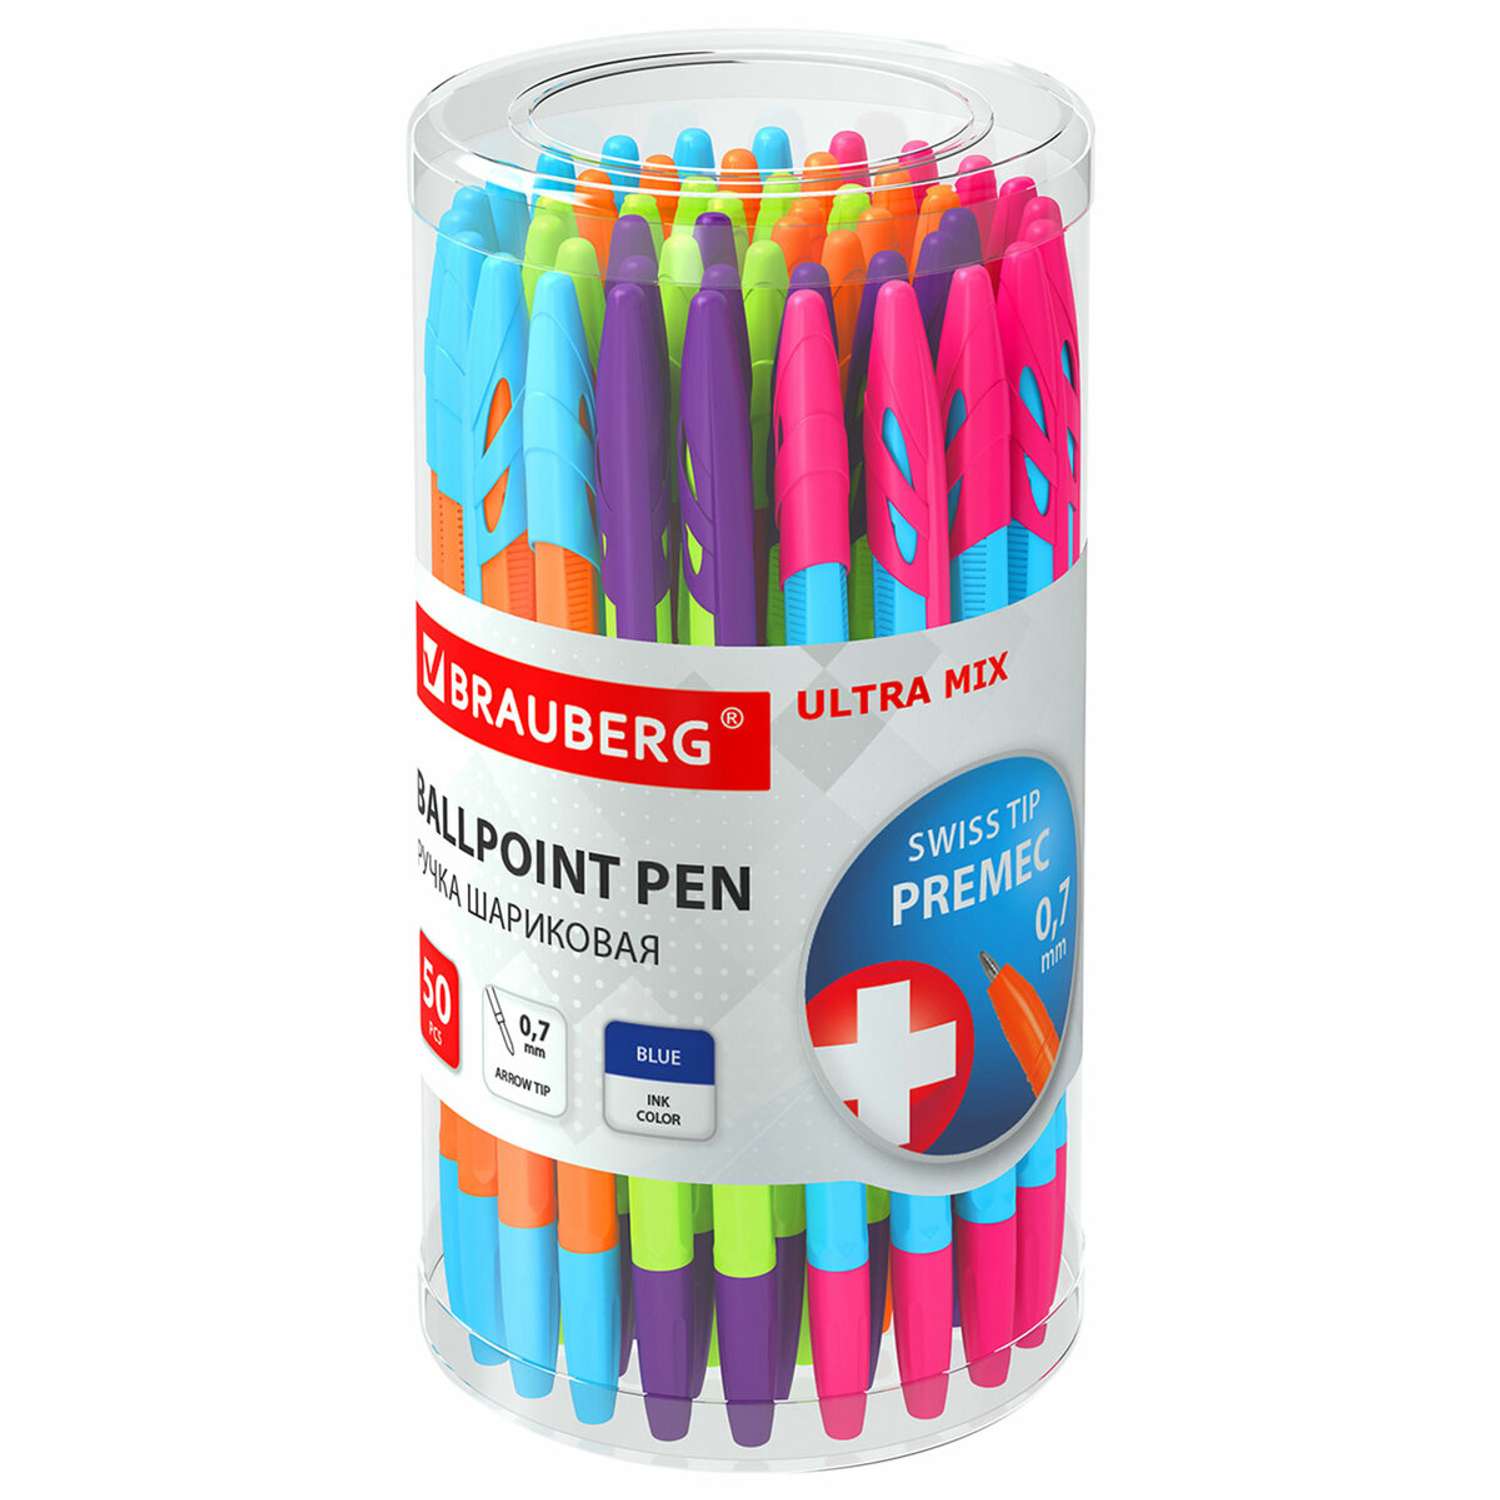 Ручки шариковые Brauberg синие набор 50 штук - фото 1